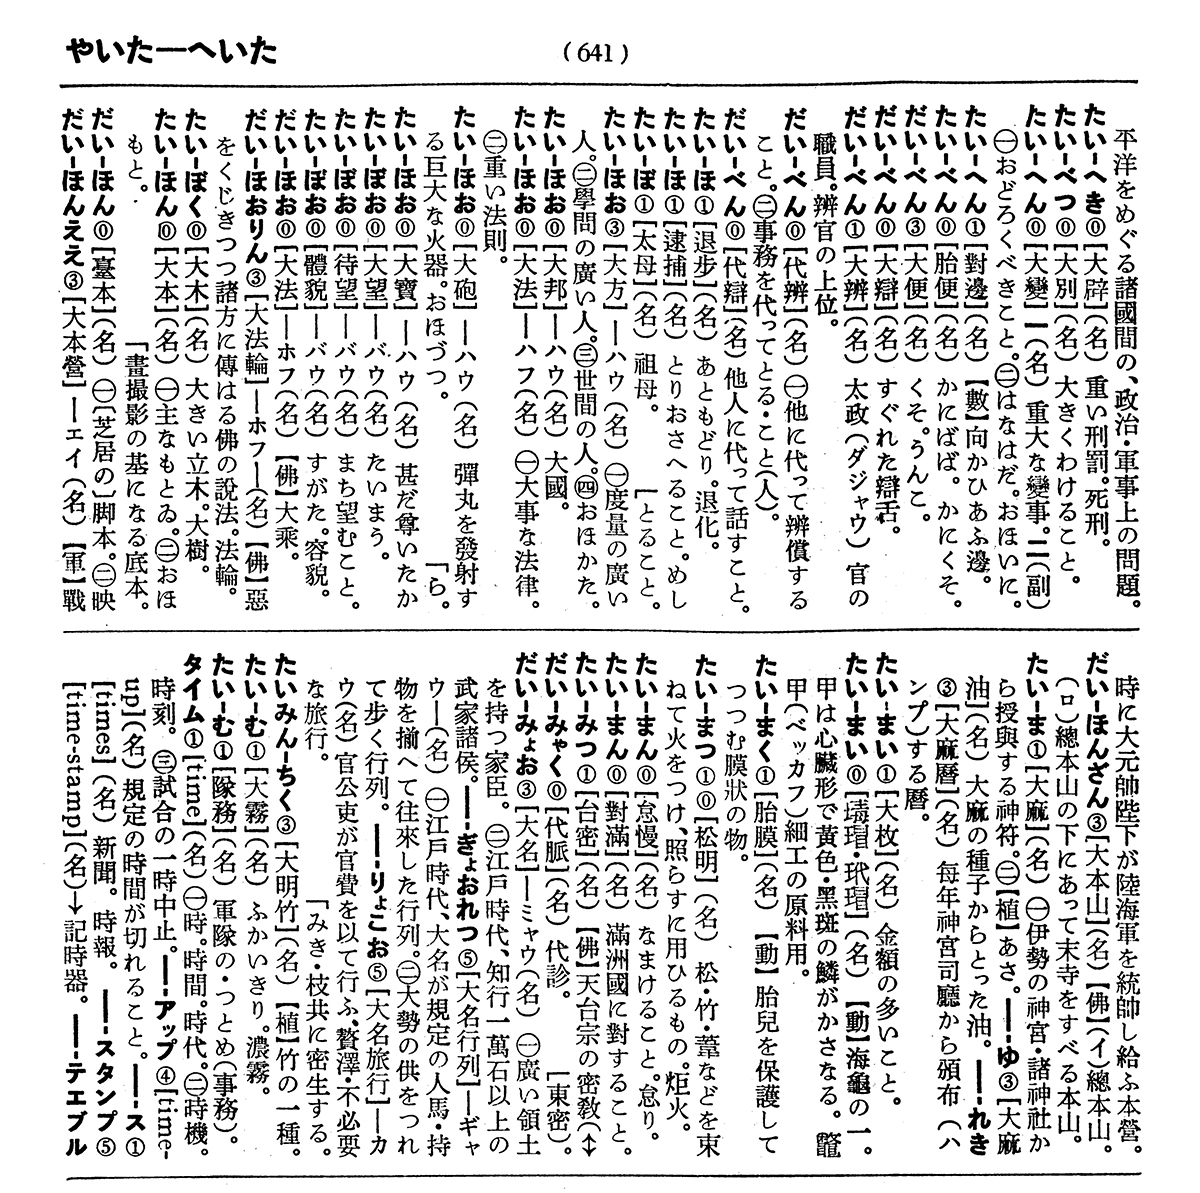 『明解国語辞典』（三省堂、1943年5月10日初版）